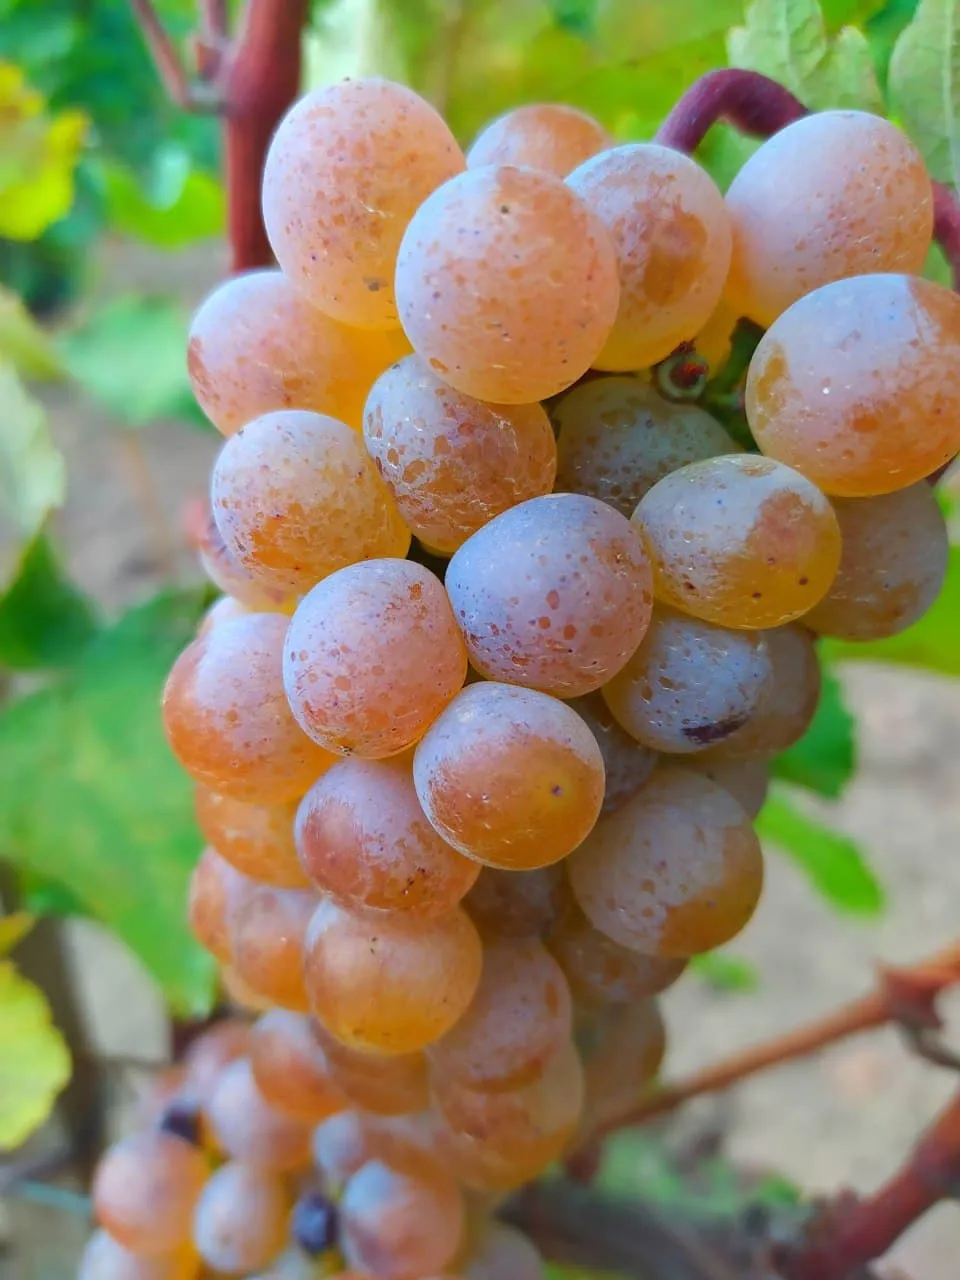 Лозам сорта Ркацители в SHABO 40 лет, они дают прекрасный виноград, из которого делают особые вина